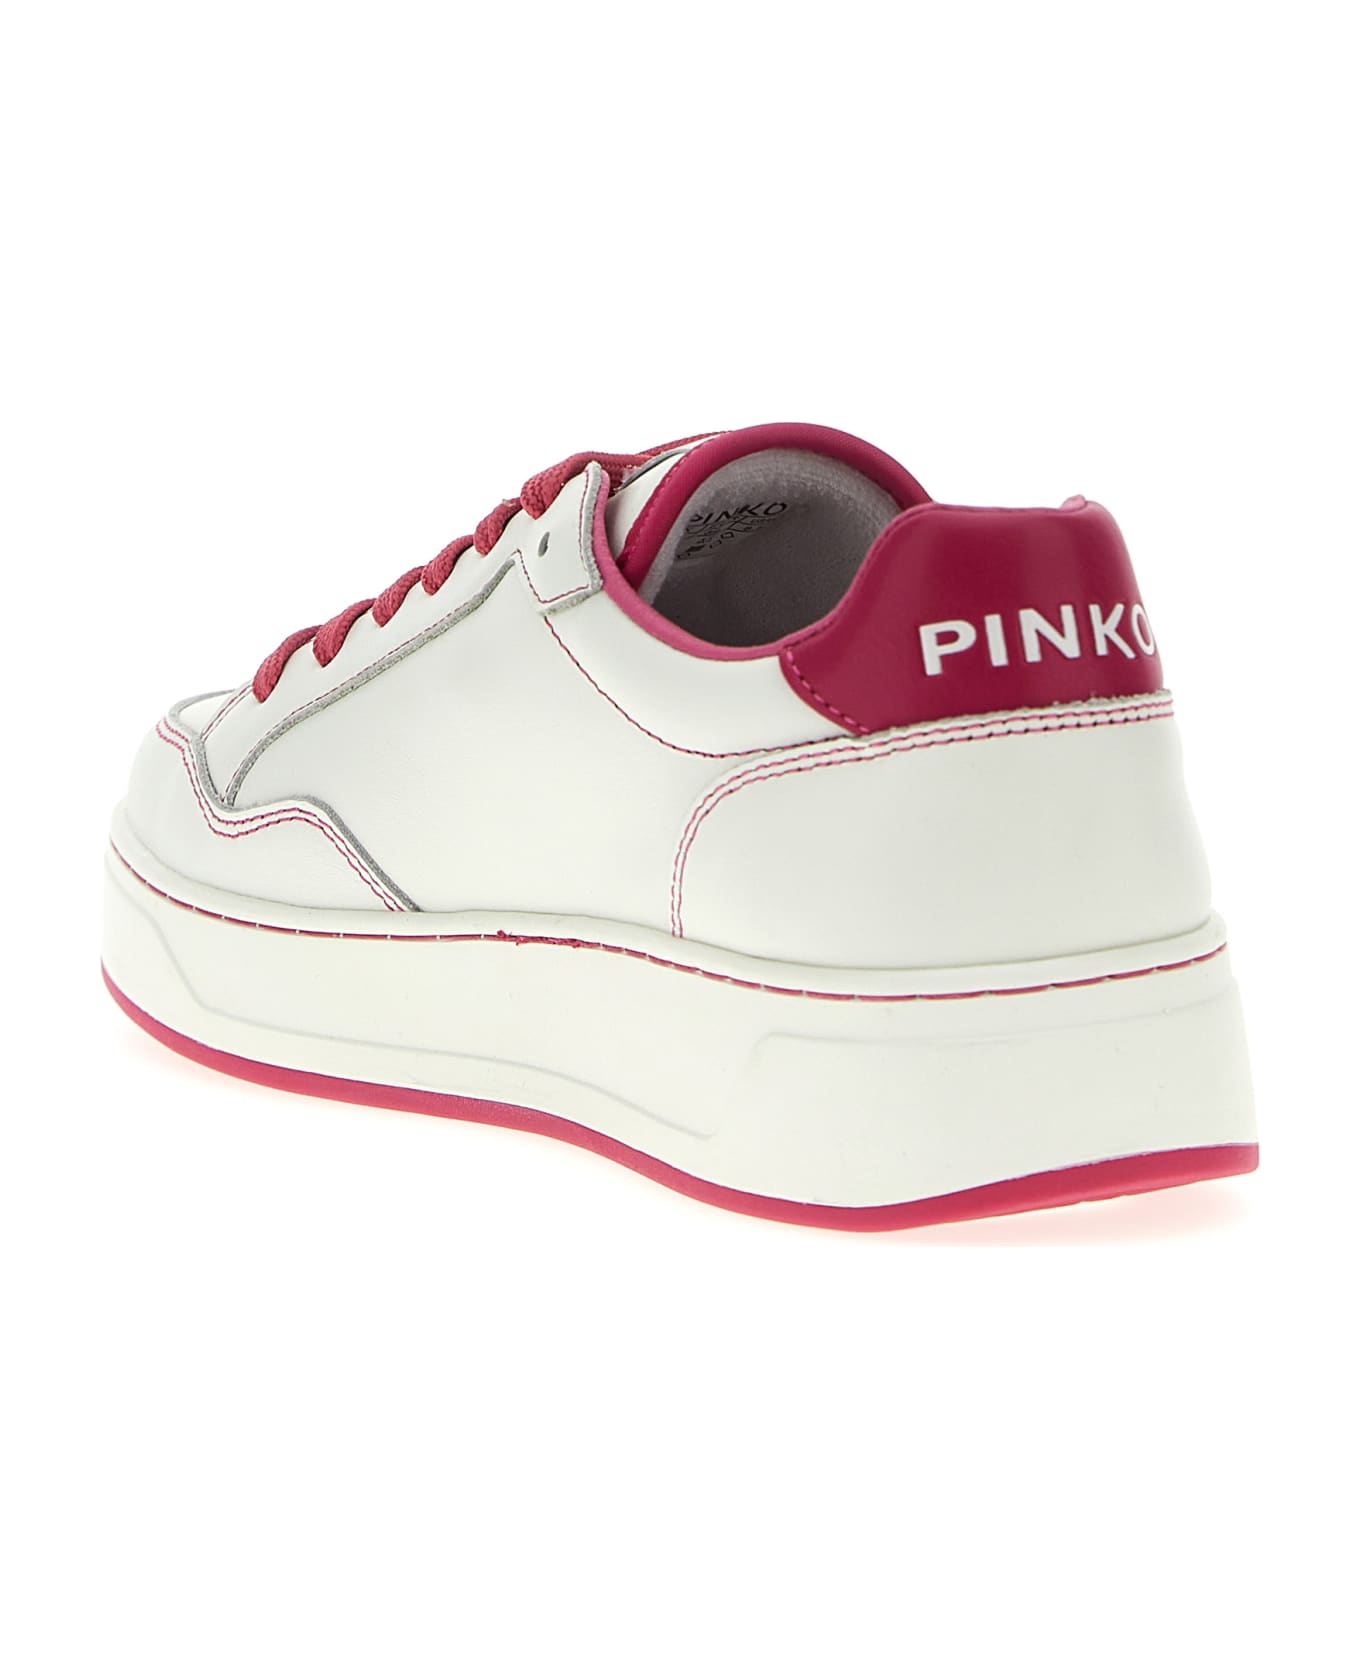 Pinko Bondy 2.0 Sneakers - Fuchsia